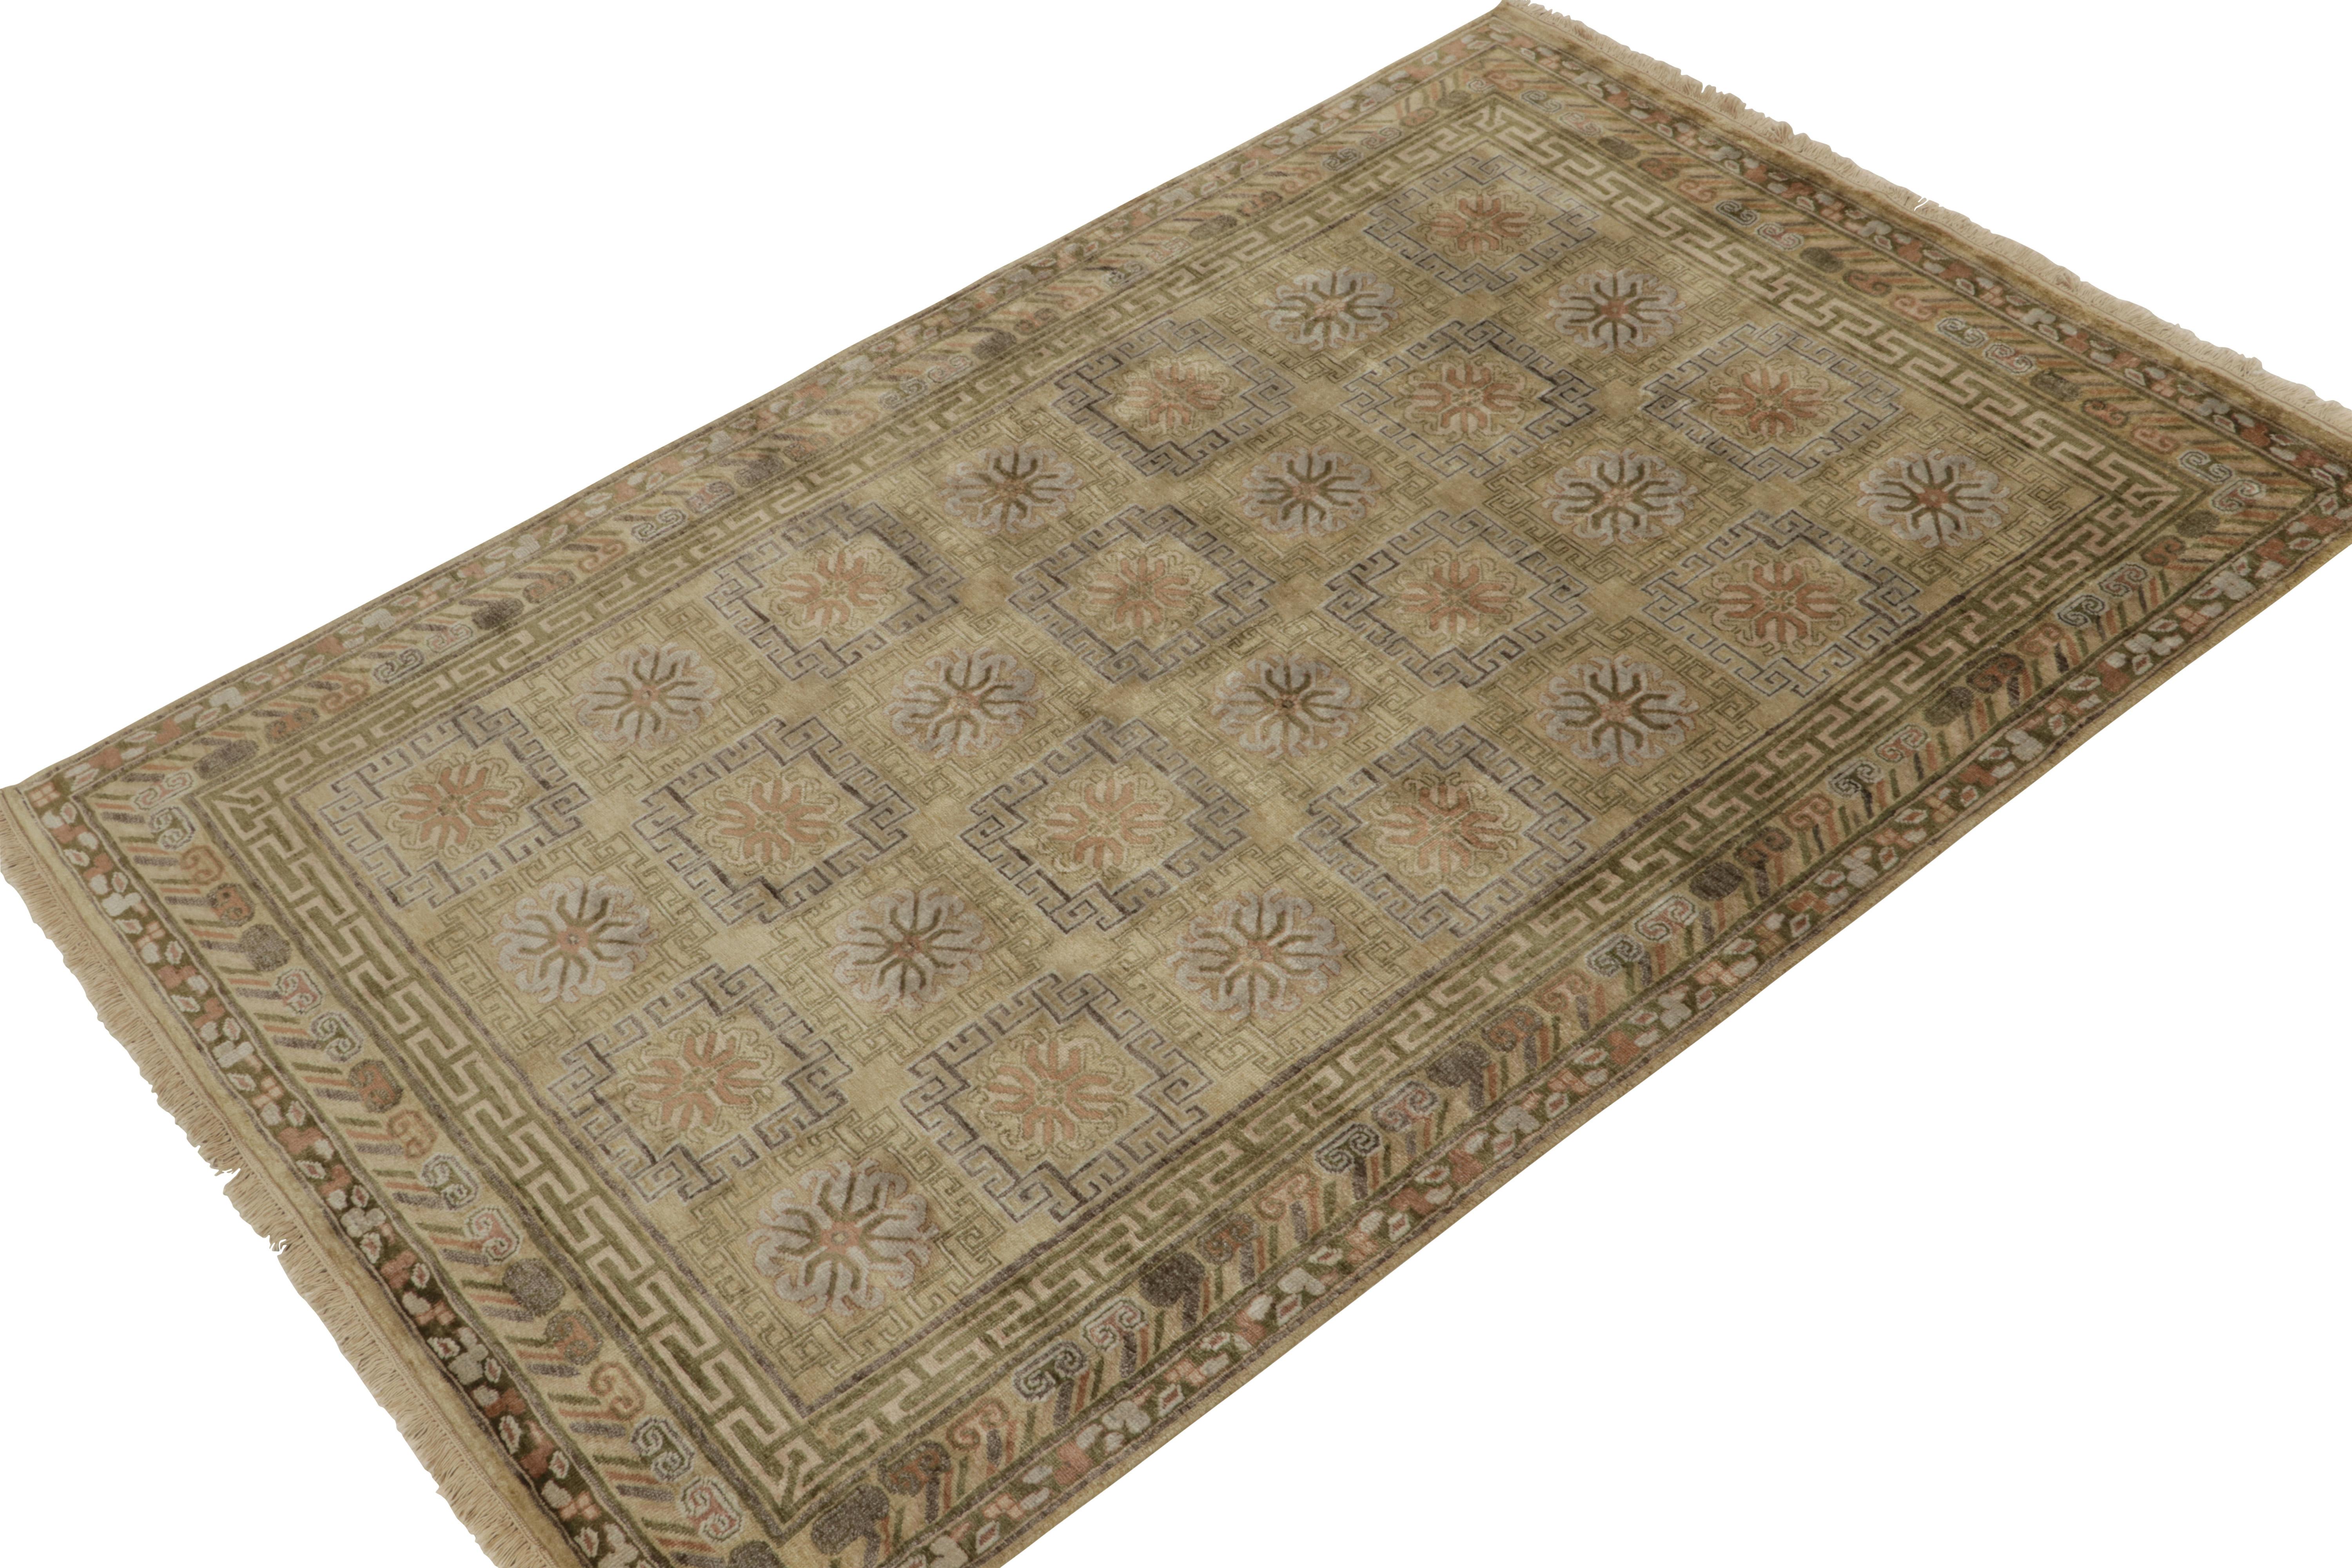 Noué à la main dans une soie luxueuse, ce tapis 6x9 de notre collection Modern Classics est particulièrement inspiré des tapis anciens de Khotan-Samarkand. 

Sur le design : L'échelle gracieuse bénéficie d'une séduisante nuance or et beige-brun,